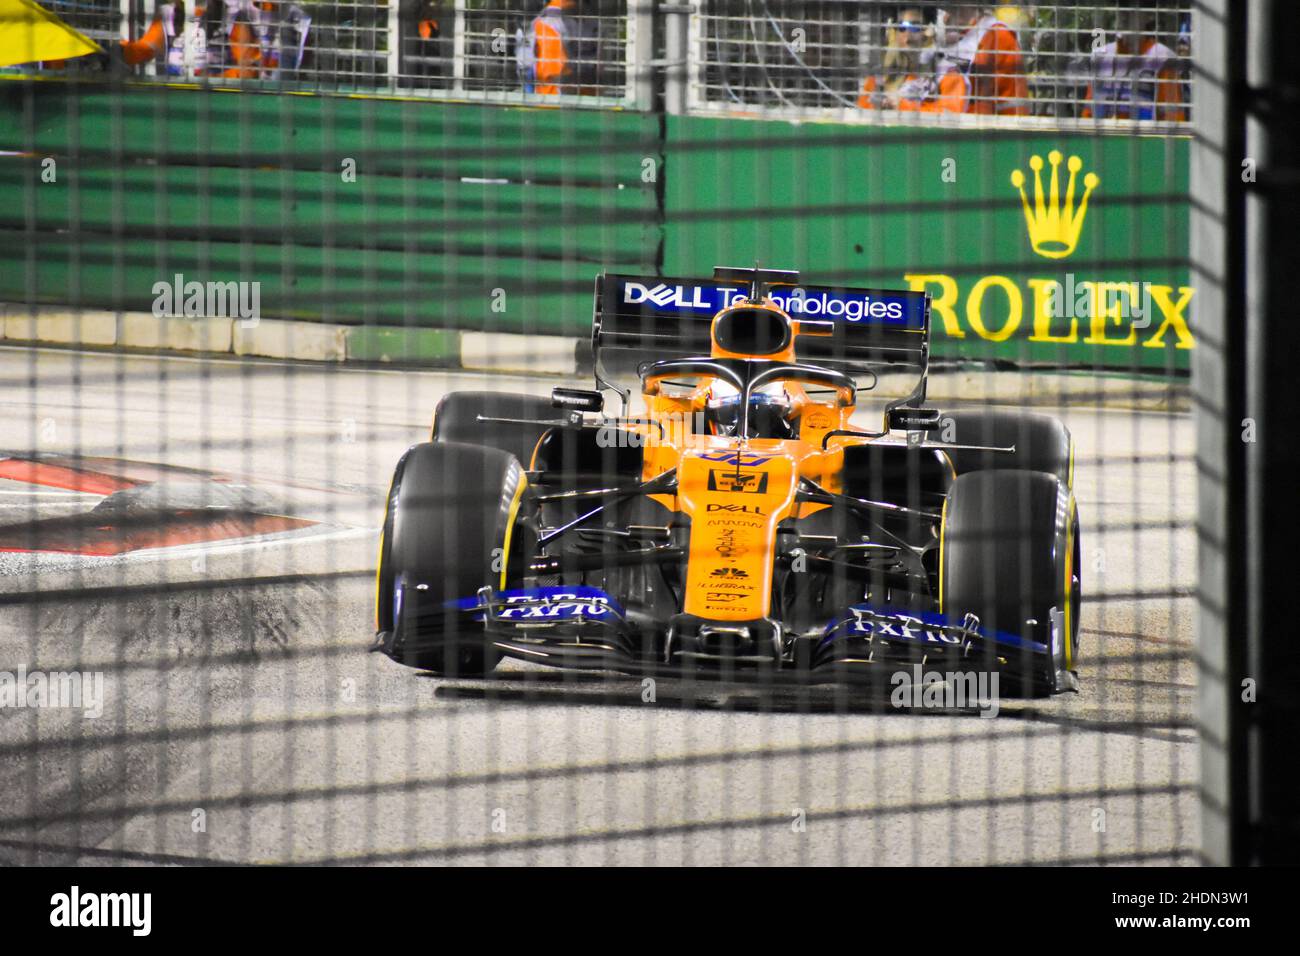 Carlos Sainz - Singapore F1 2019 Stock Photo - Alamy